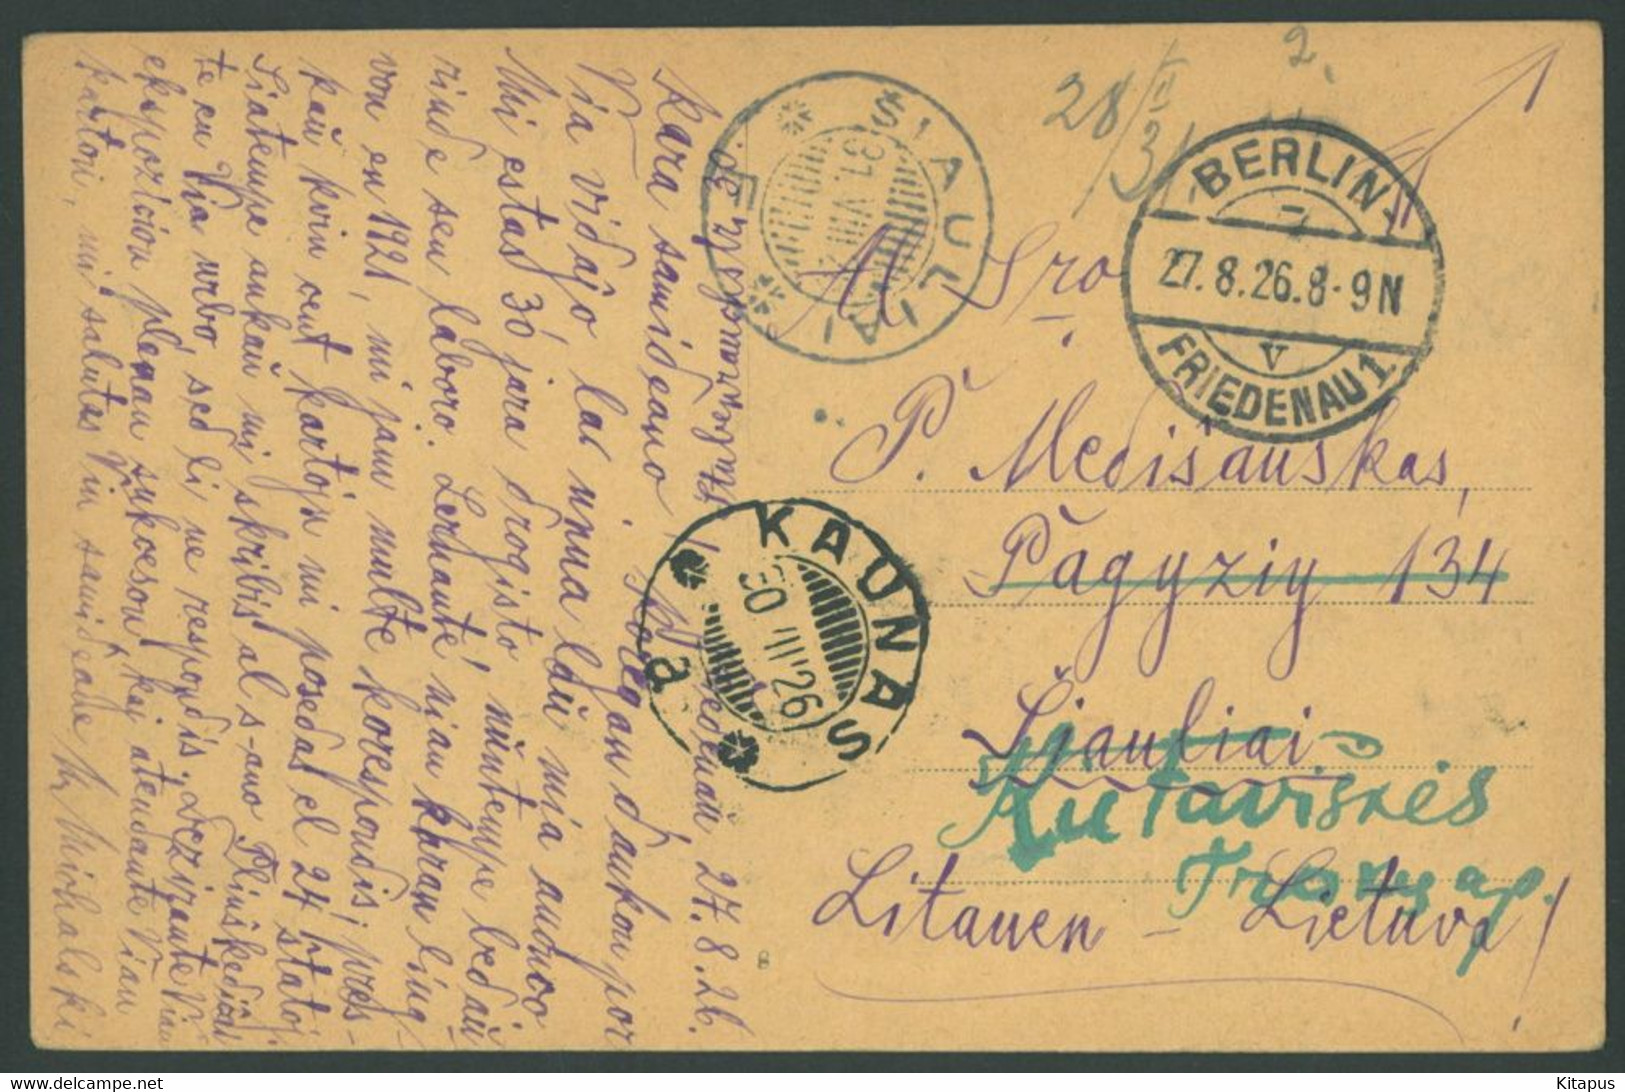 BERLIN Vintage Postcard Germany - Wilmersdorf